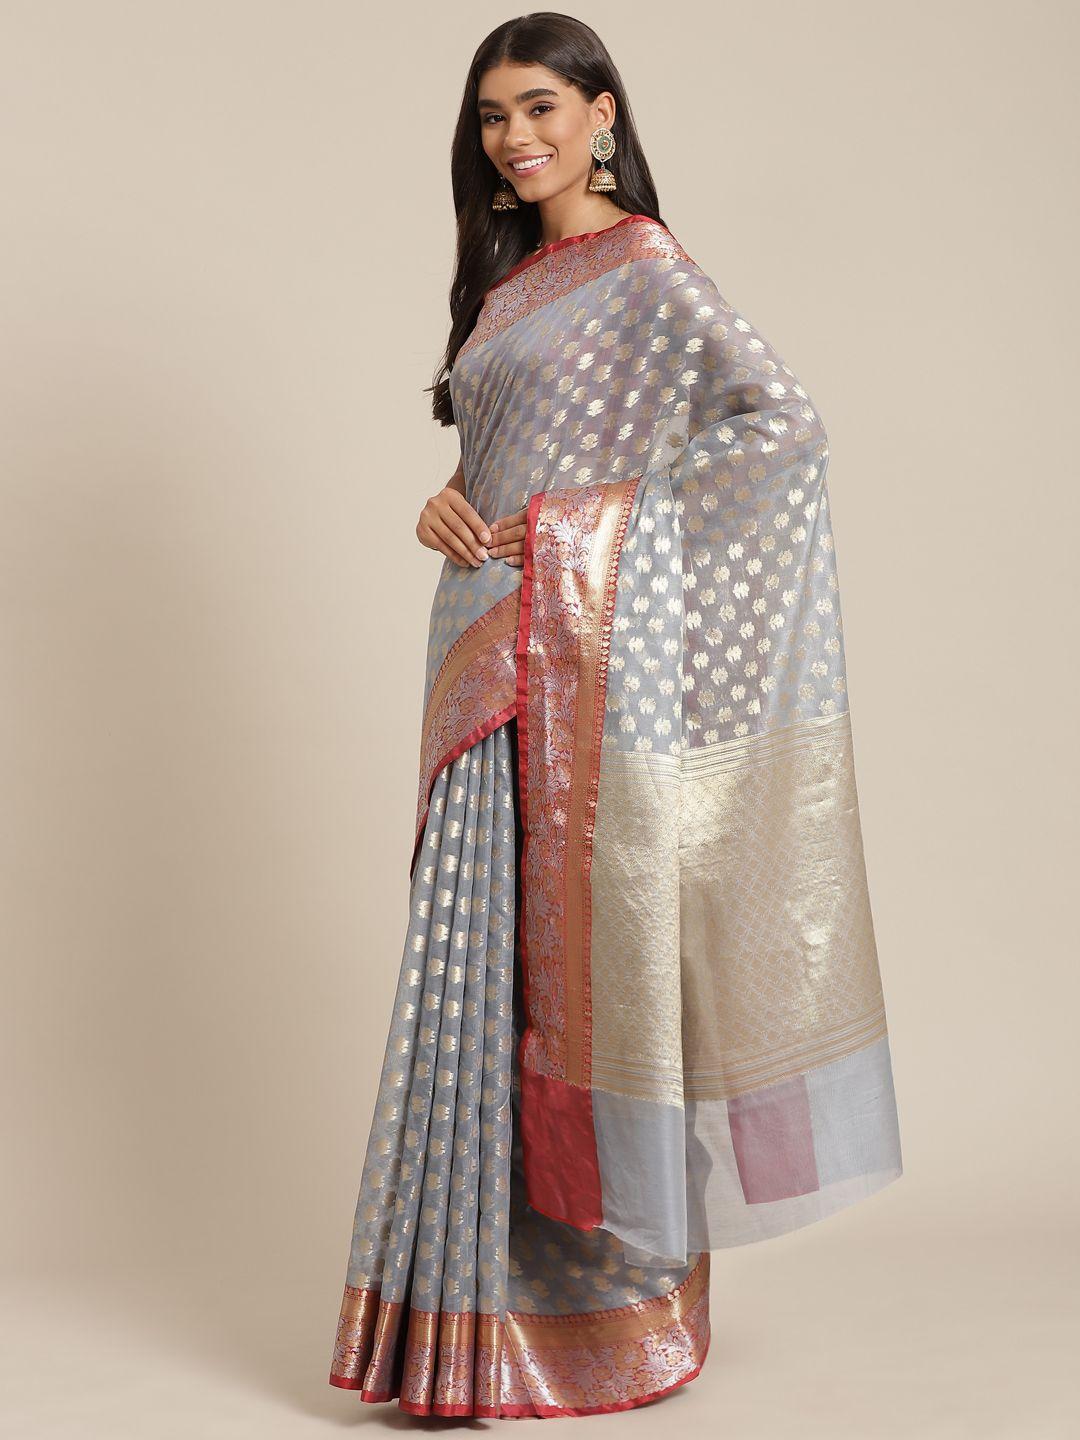 banarasi style grey & gold-toned woven design silk cotton banarasi saree